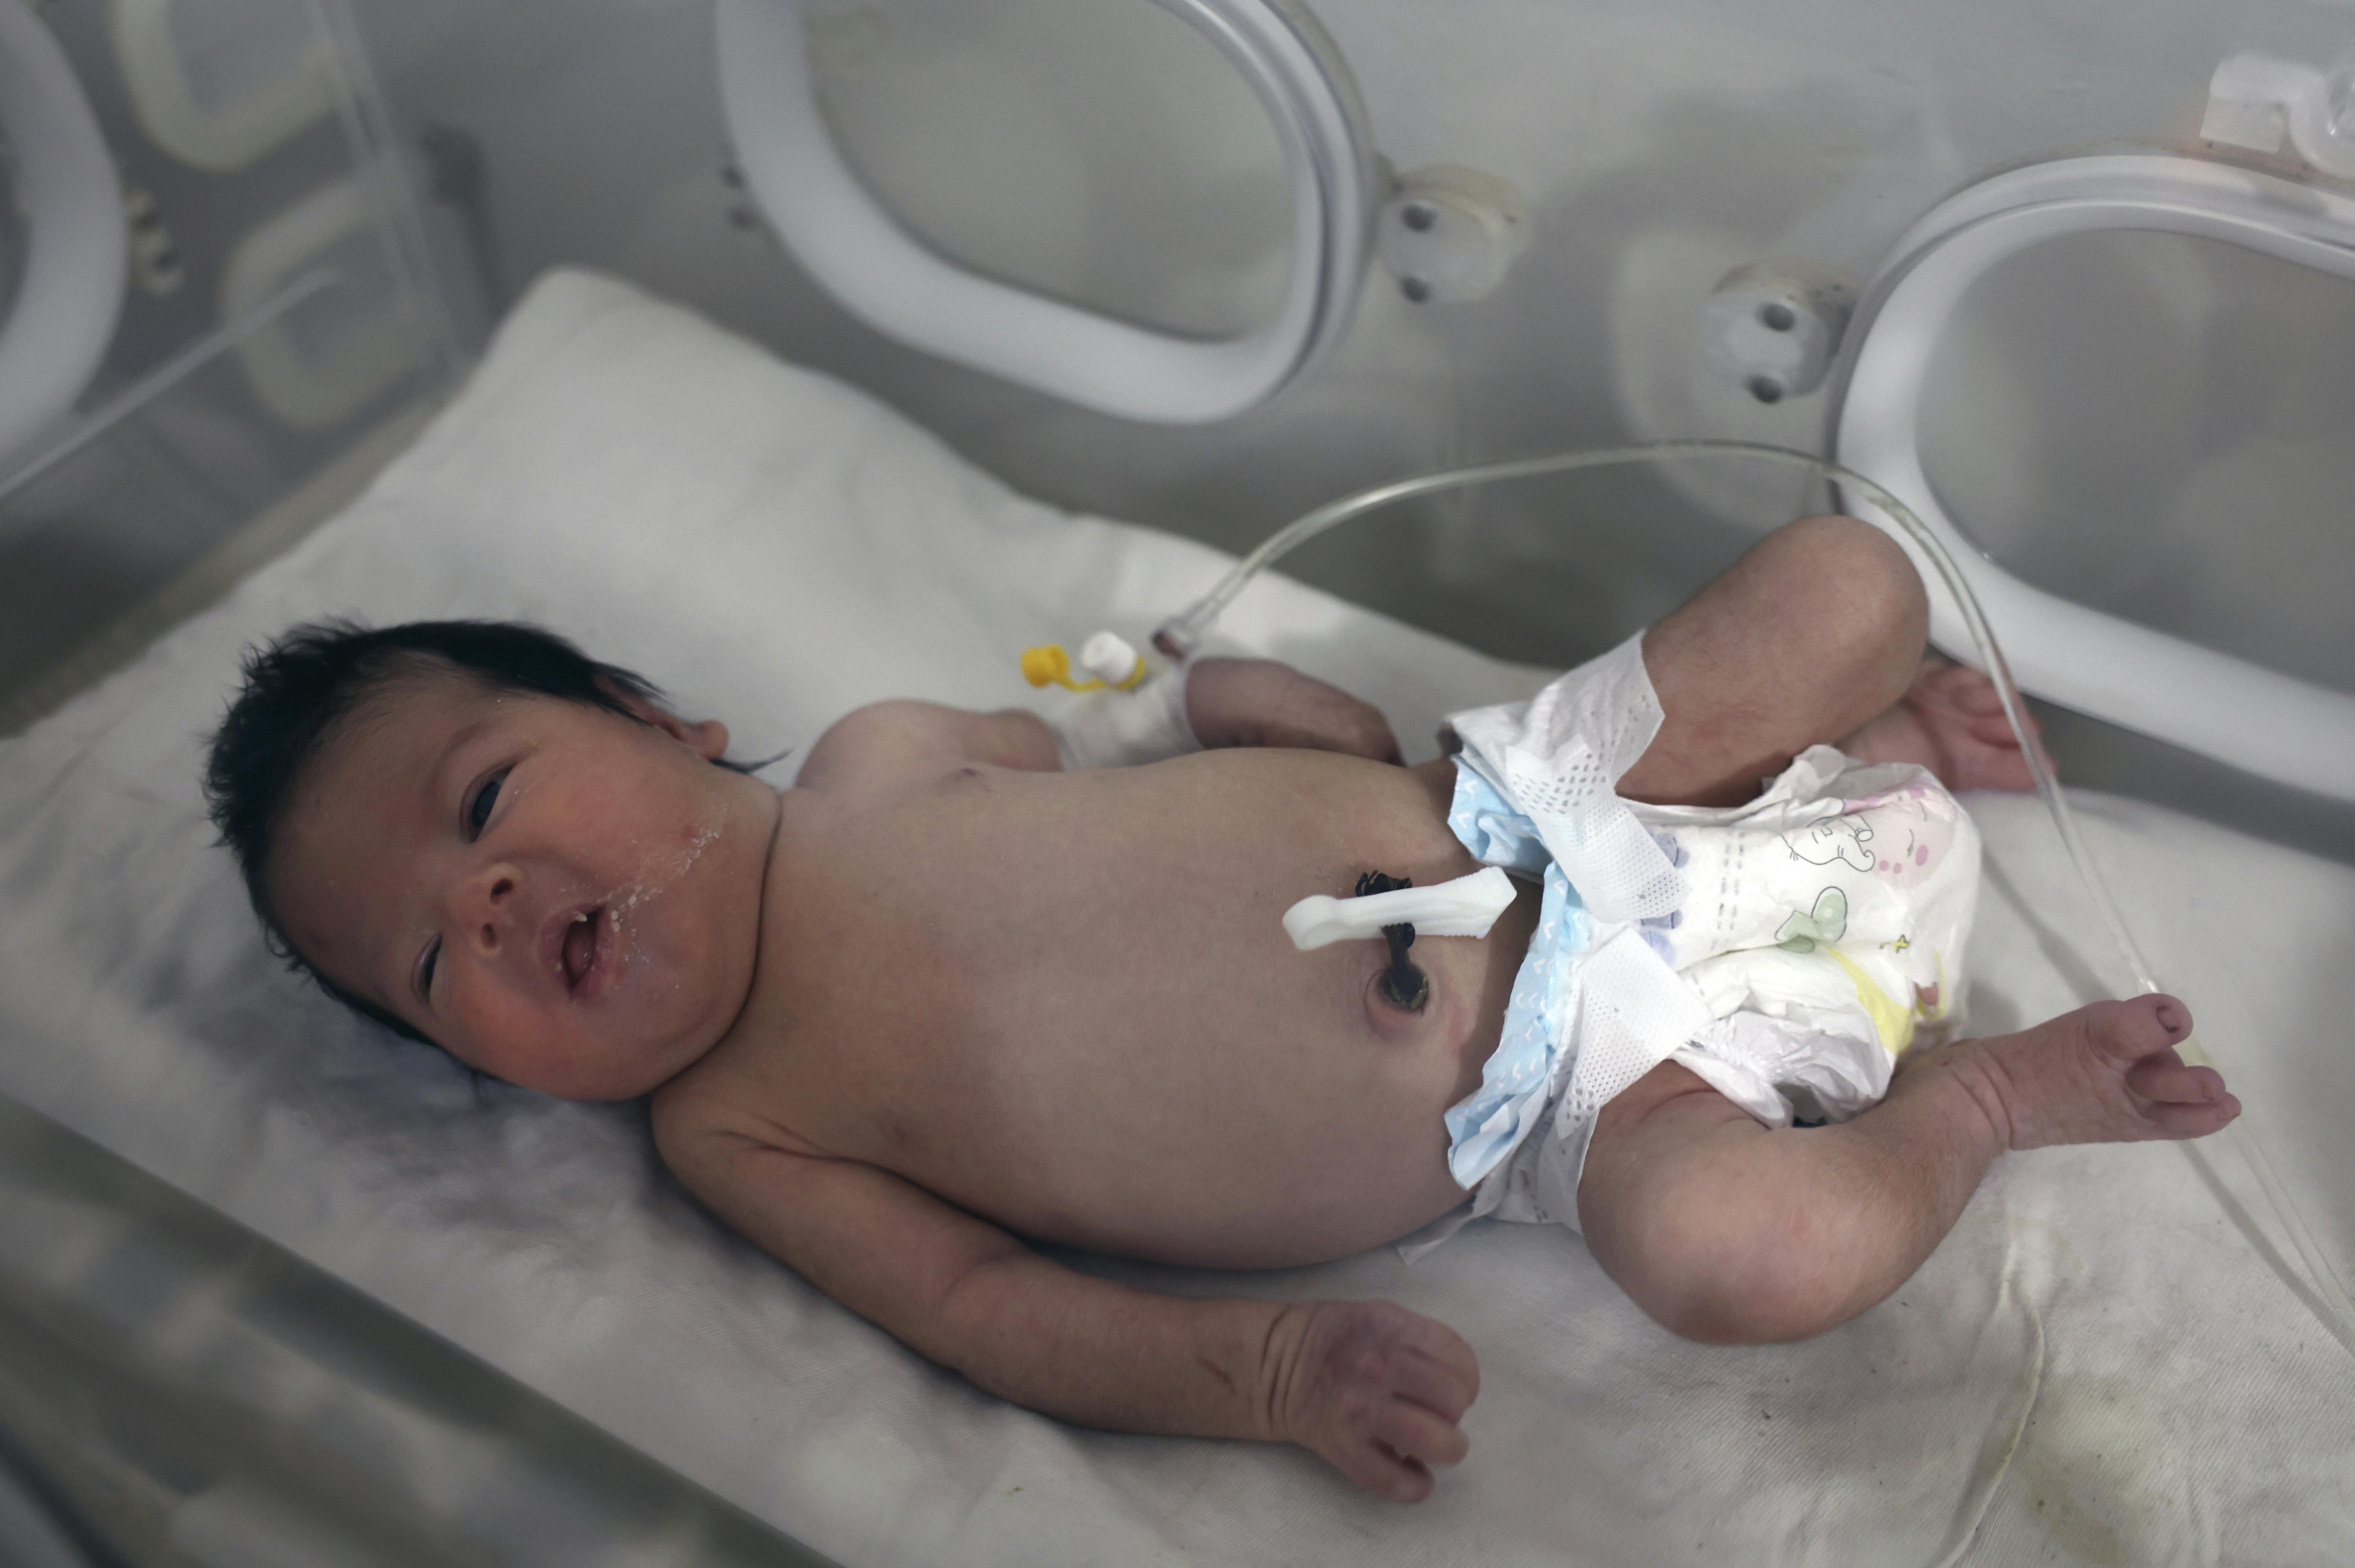 En hel familie undtagen ét nyfødt barn mistede livet, da en boligblok styrtede sammen i den nordlige del af Syrien under jordskælvet natten til mandag. Aya, som det nyfødte barn hedder, befinder sig nu på et hospital i byen Afrin.&nbsp;